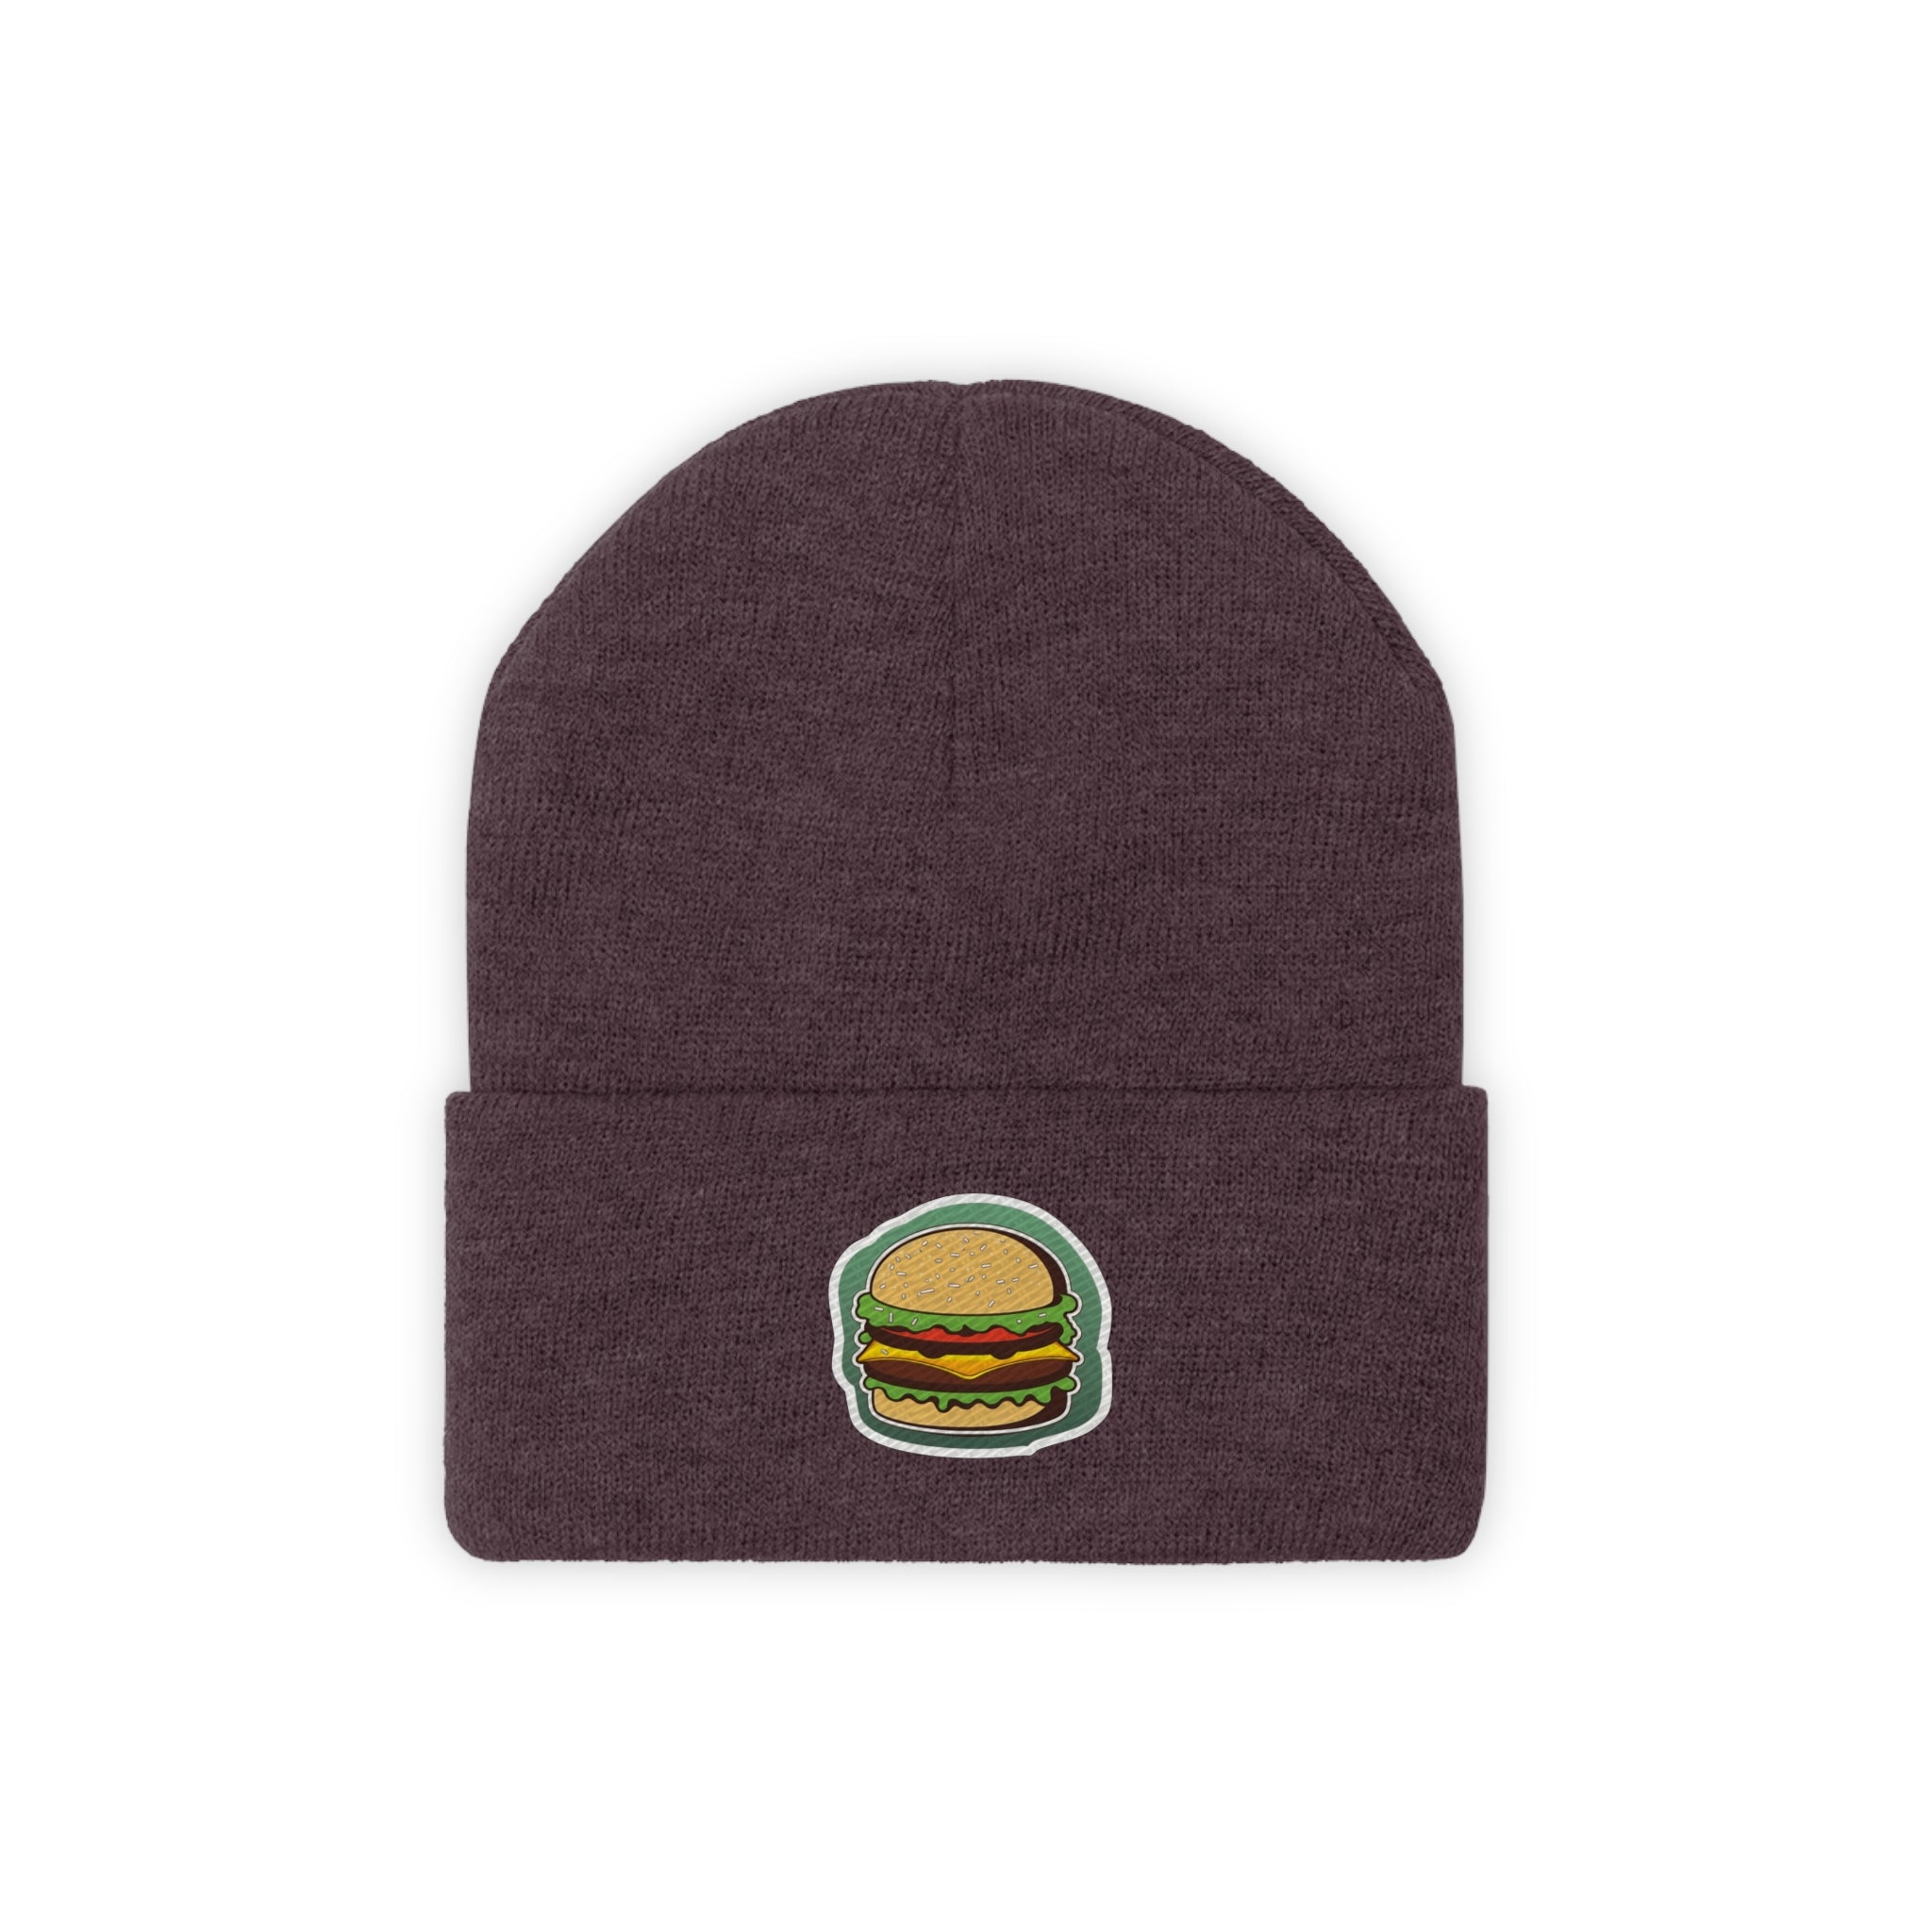 Knit Beanie - Burger Pop Art